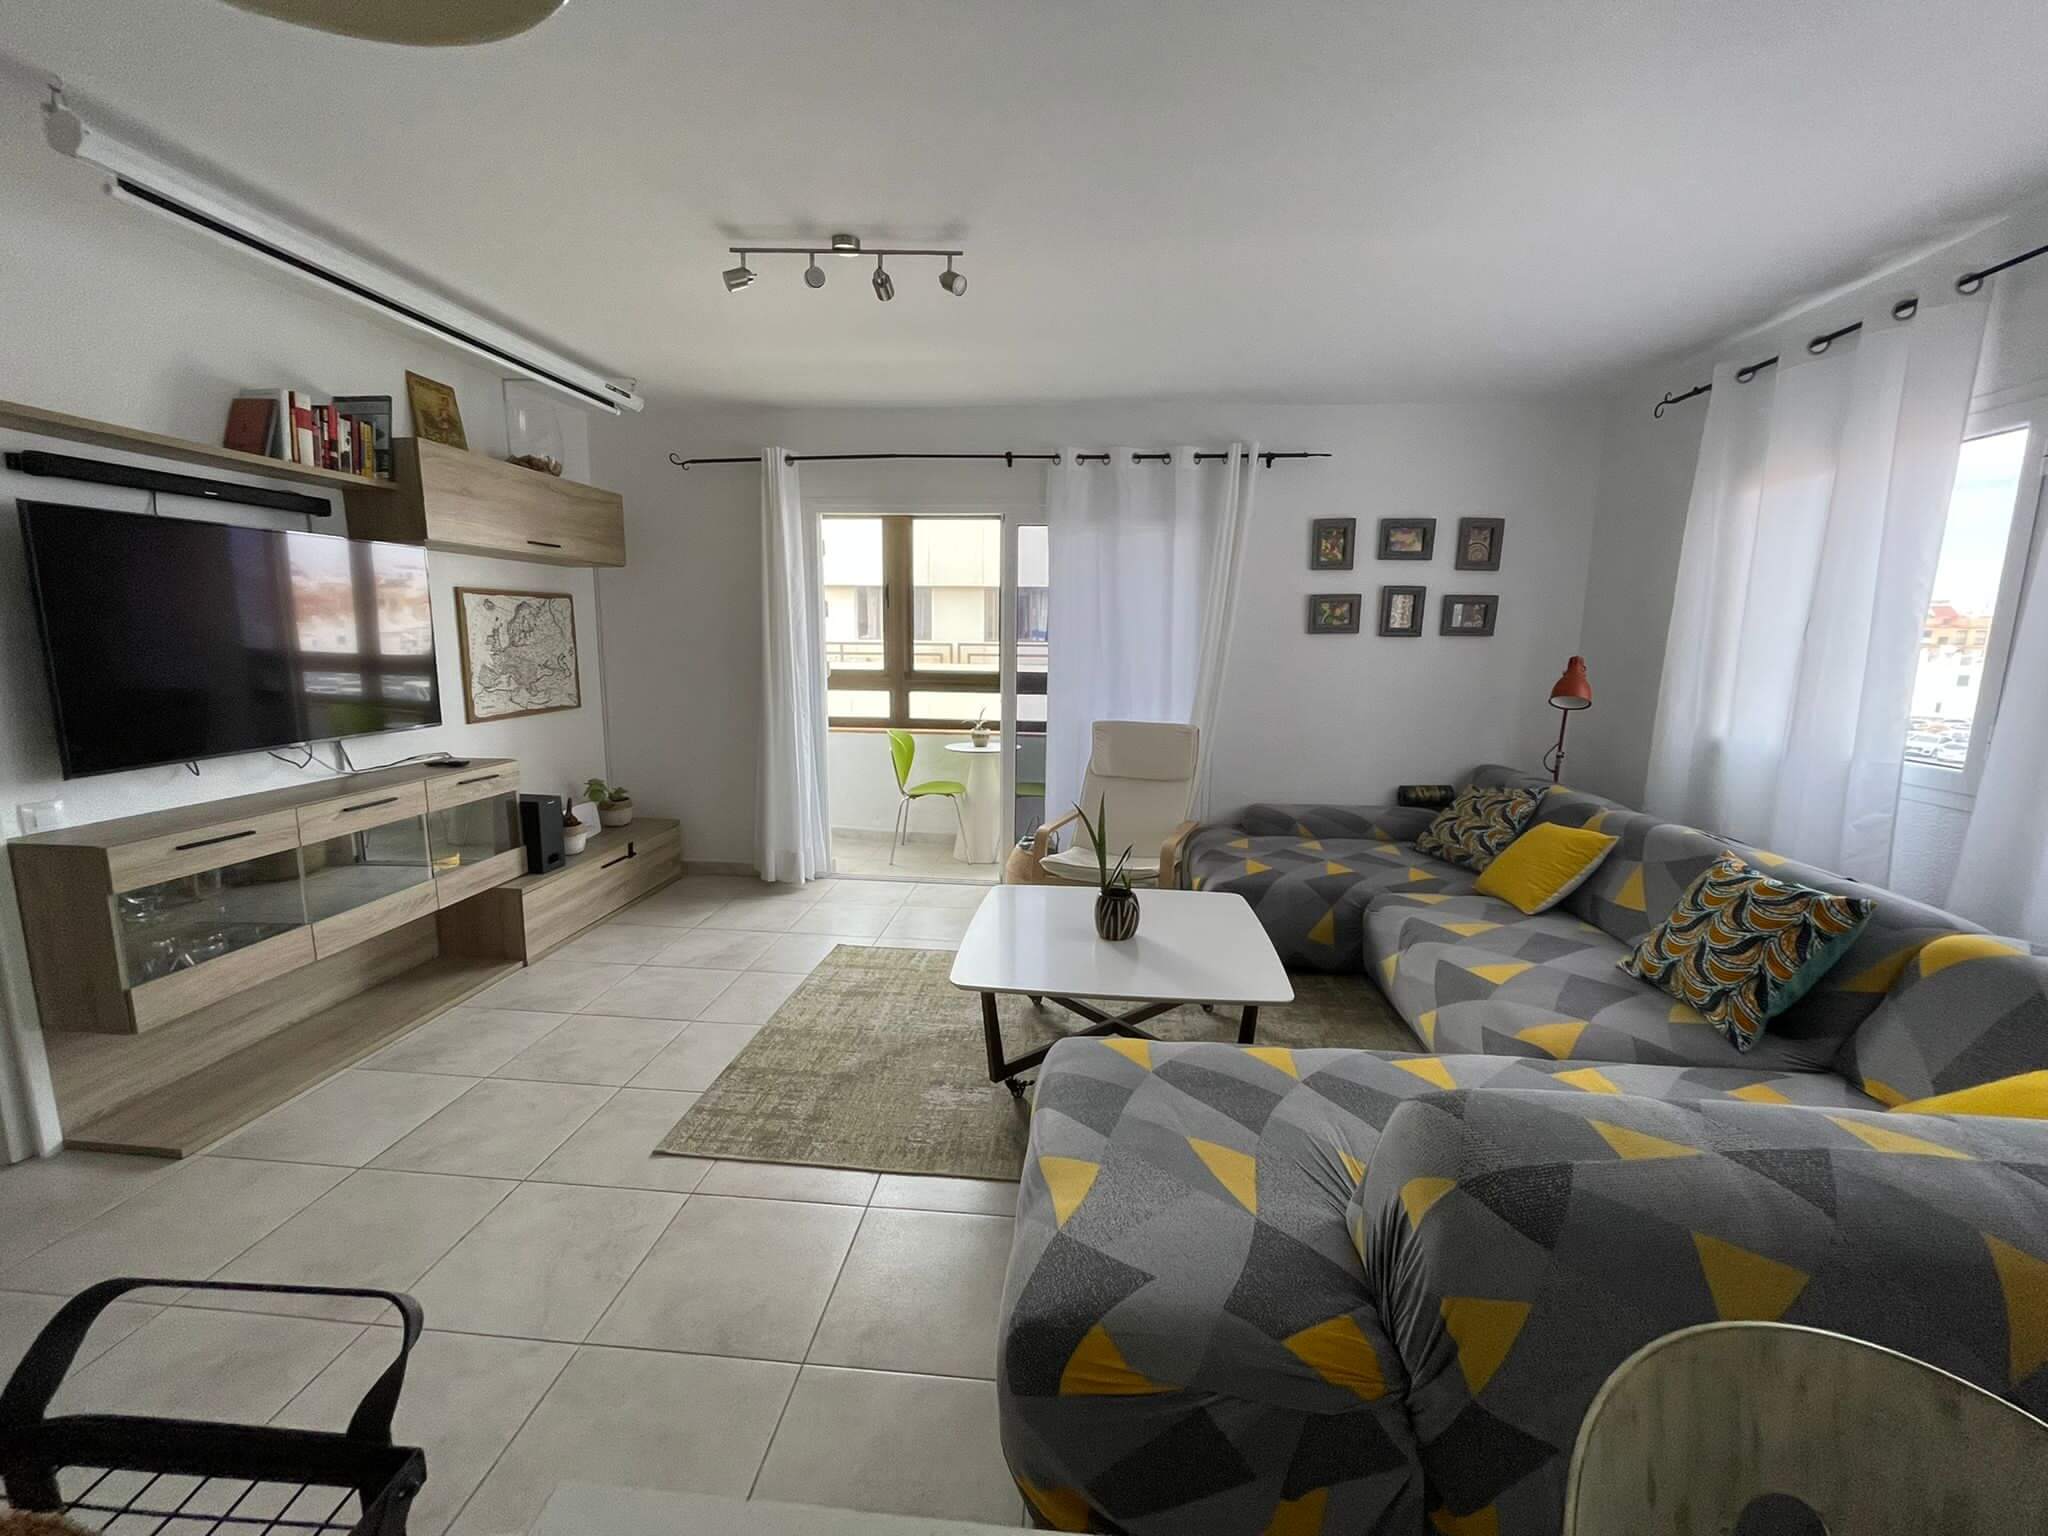 Llargia - Precioso apartamento amueblado en alquiler en Fuerteventura